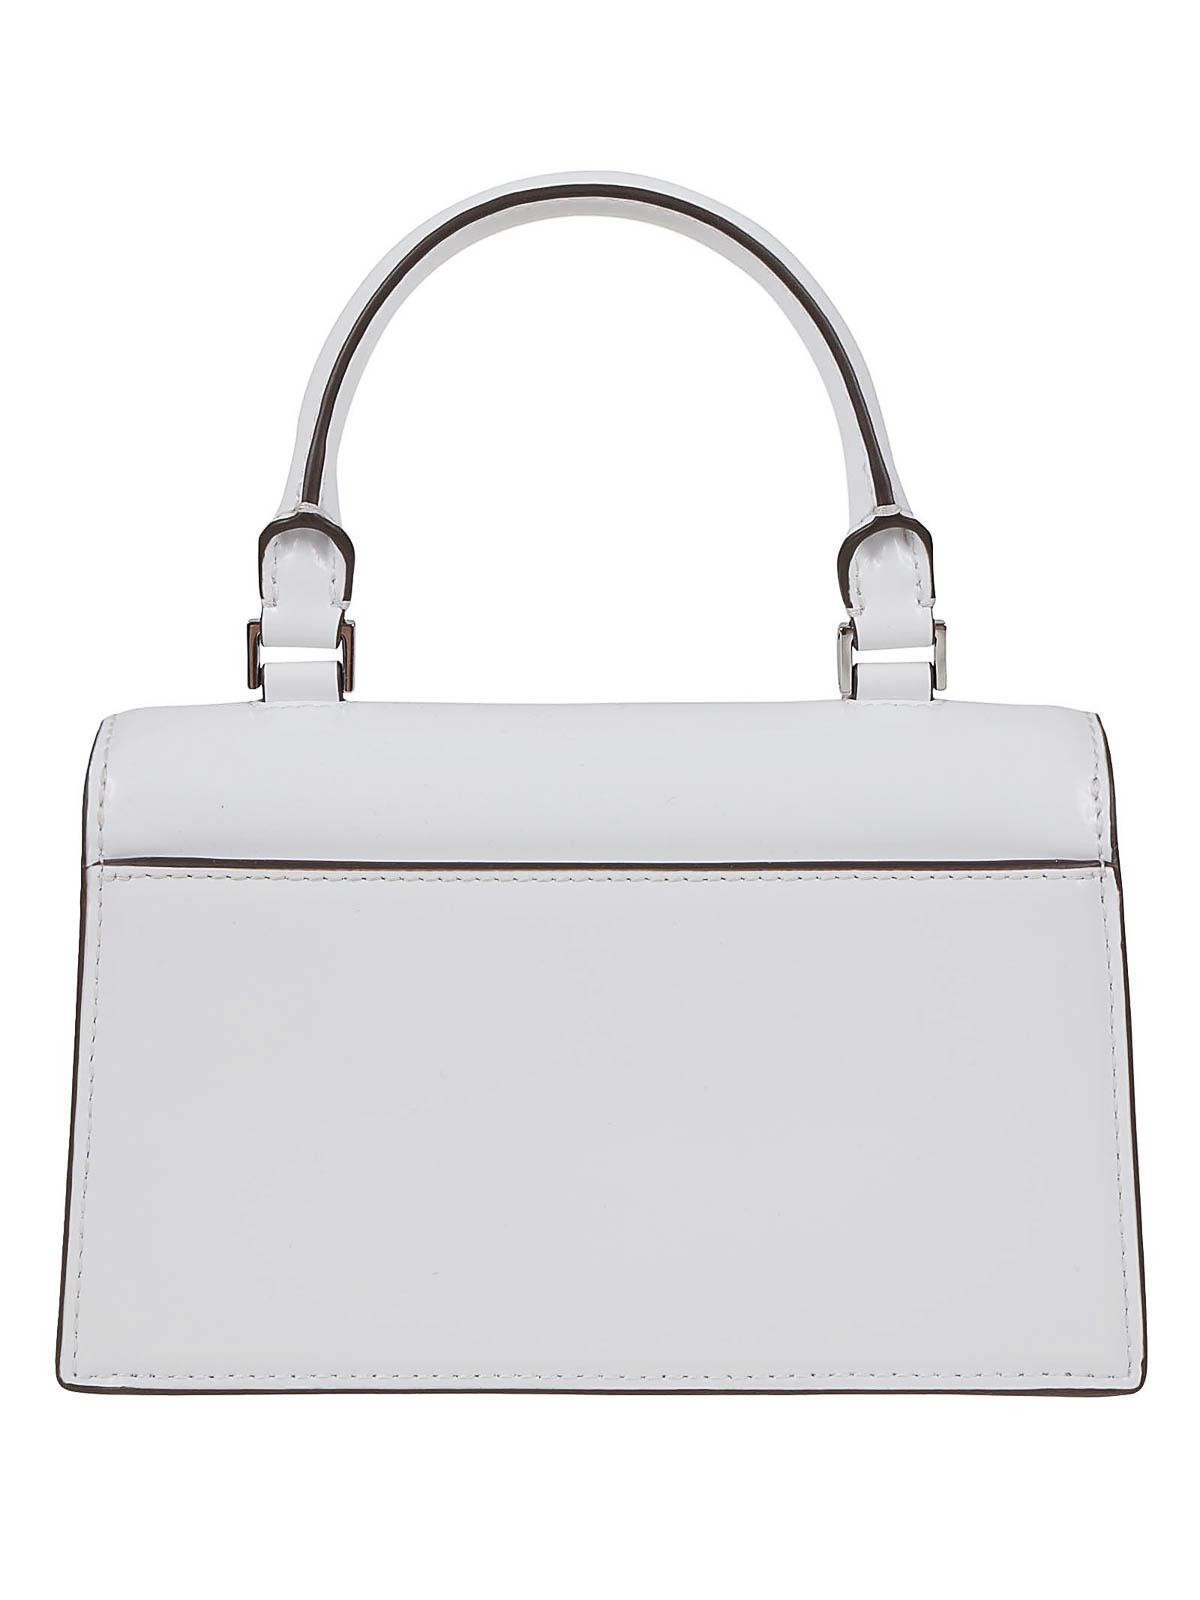 Tory Burch Bon Bon Spazzolato Mini Top-handle Bag in White